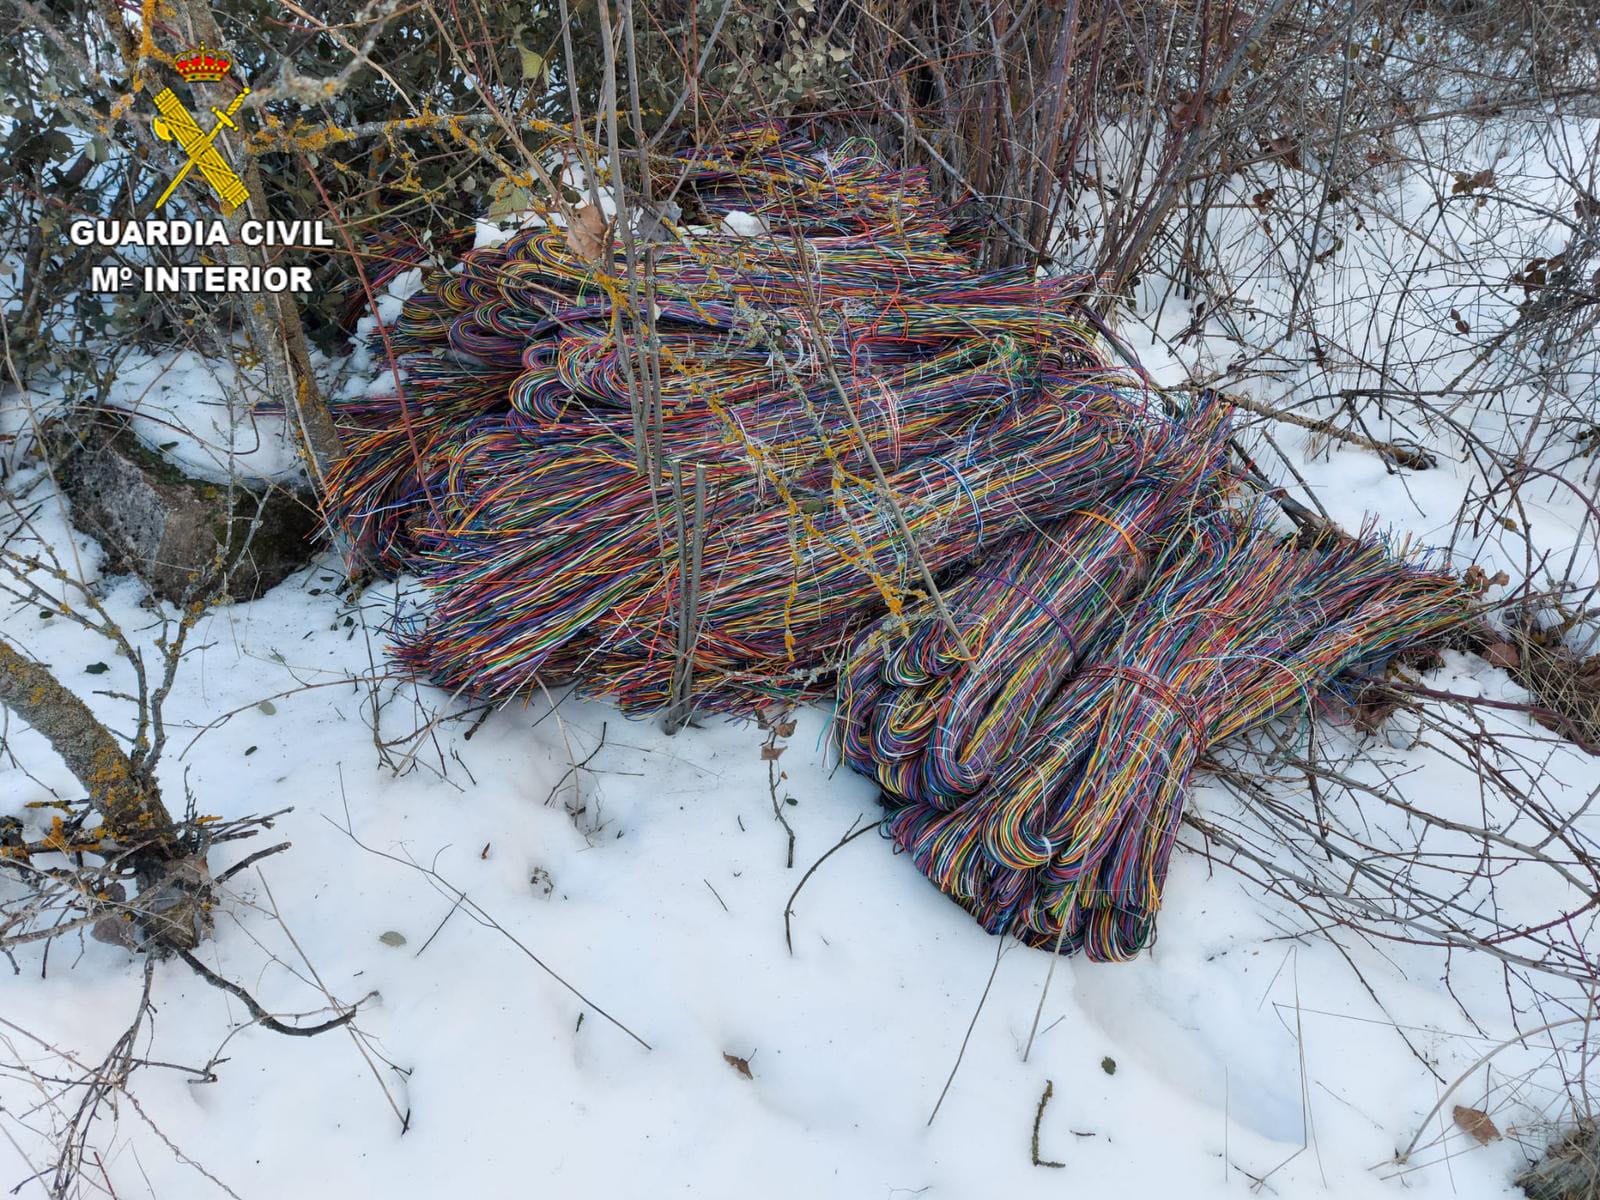 Parte del cable robado, encontrado entre la nieve cerca de Luzaga. (Foto: Guardia Civil)